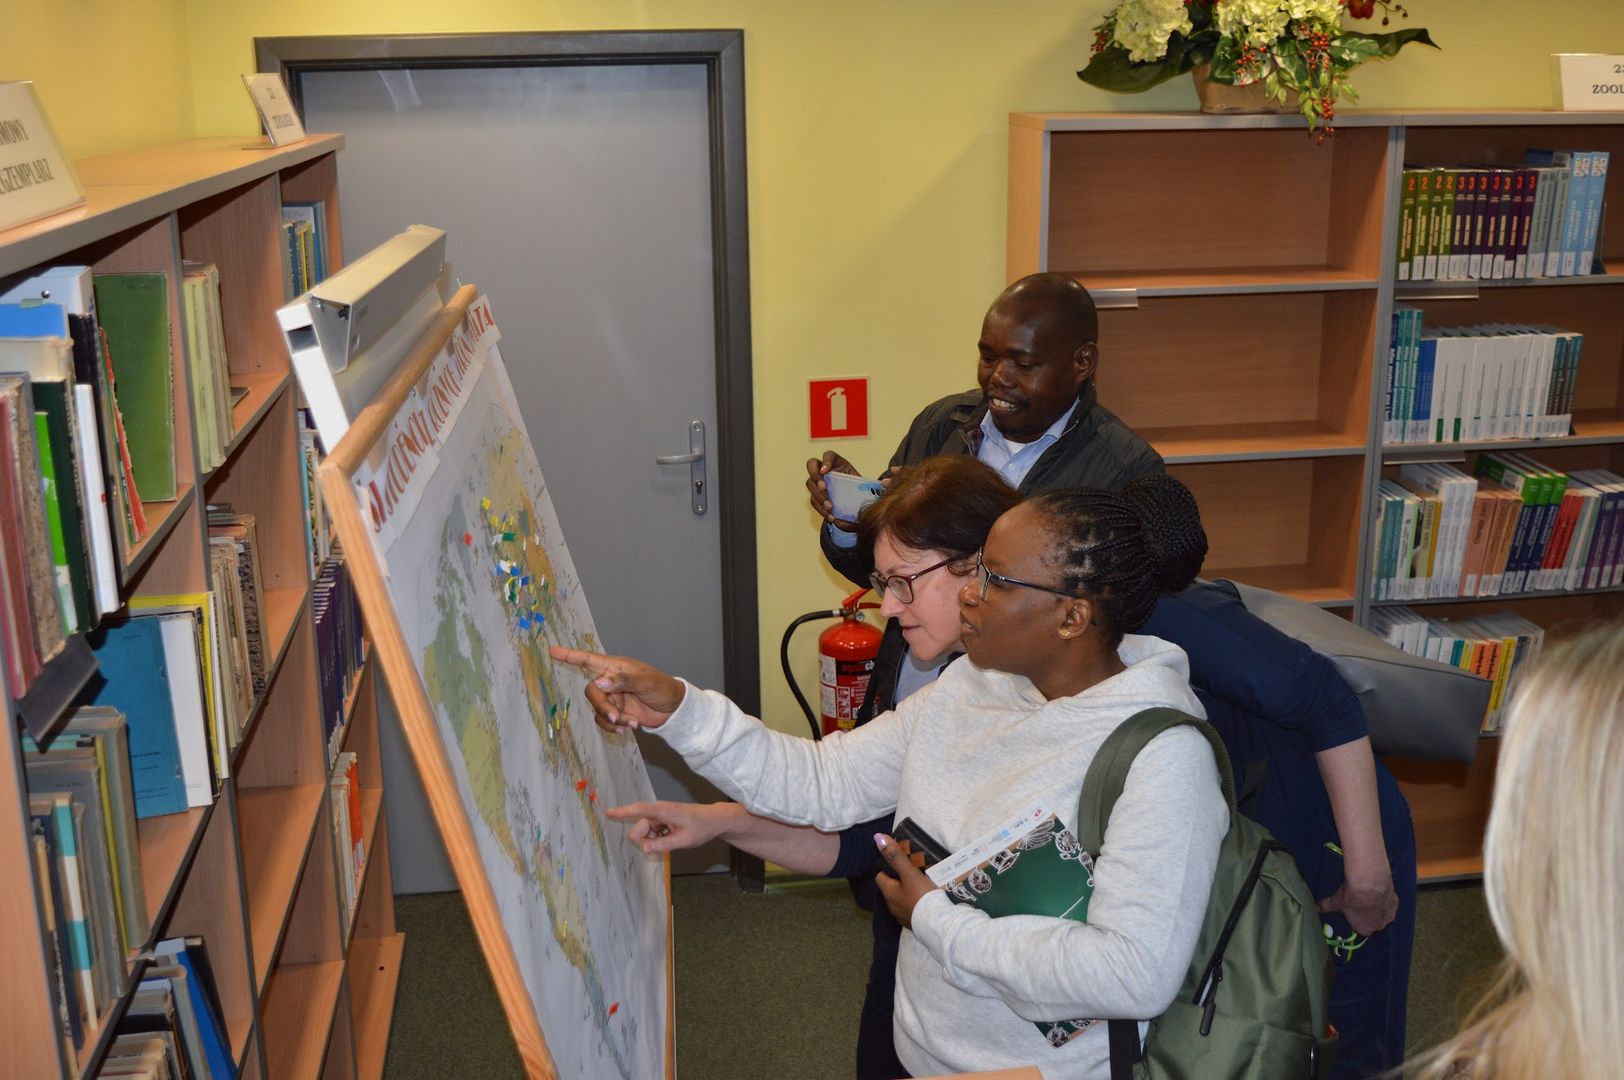 Goście z Kenii oglądają mapę z zaznaczonymi państwami pochodzenia studentów ZUT w Szczecinie